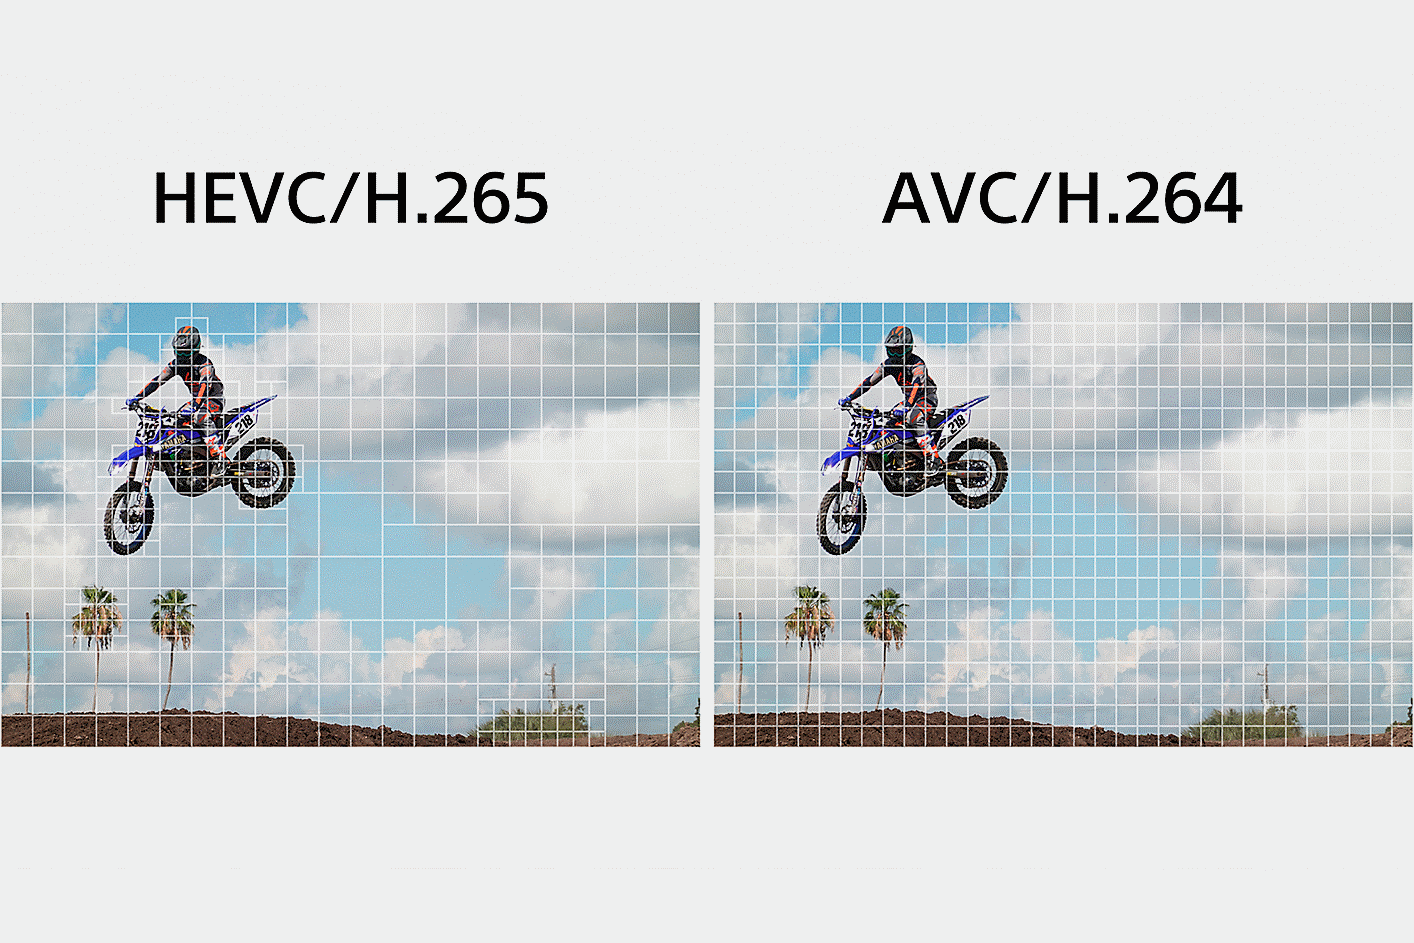 Stânga: ilustrație HEVC/H.265, împărțind o parte complexă a clipului în segmente mai fine pentru a procesa datele; Dreapta: ilustrație AVC/H.264, împărțind în mod egal imaginile pentru a procesa datele